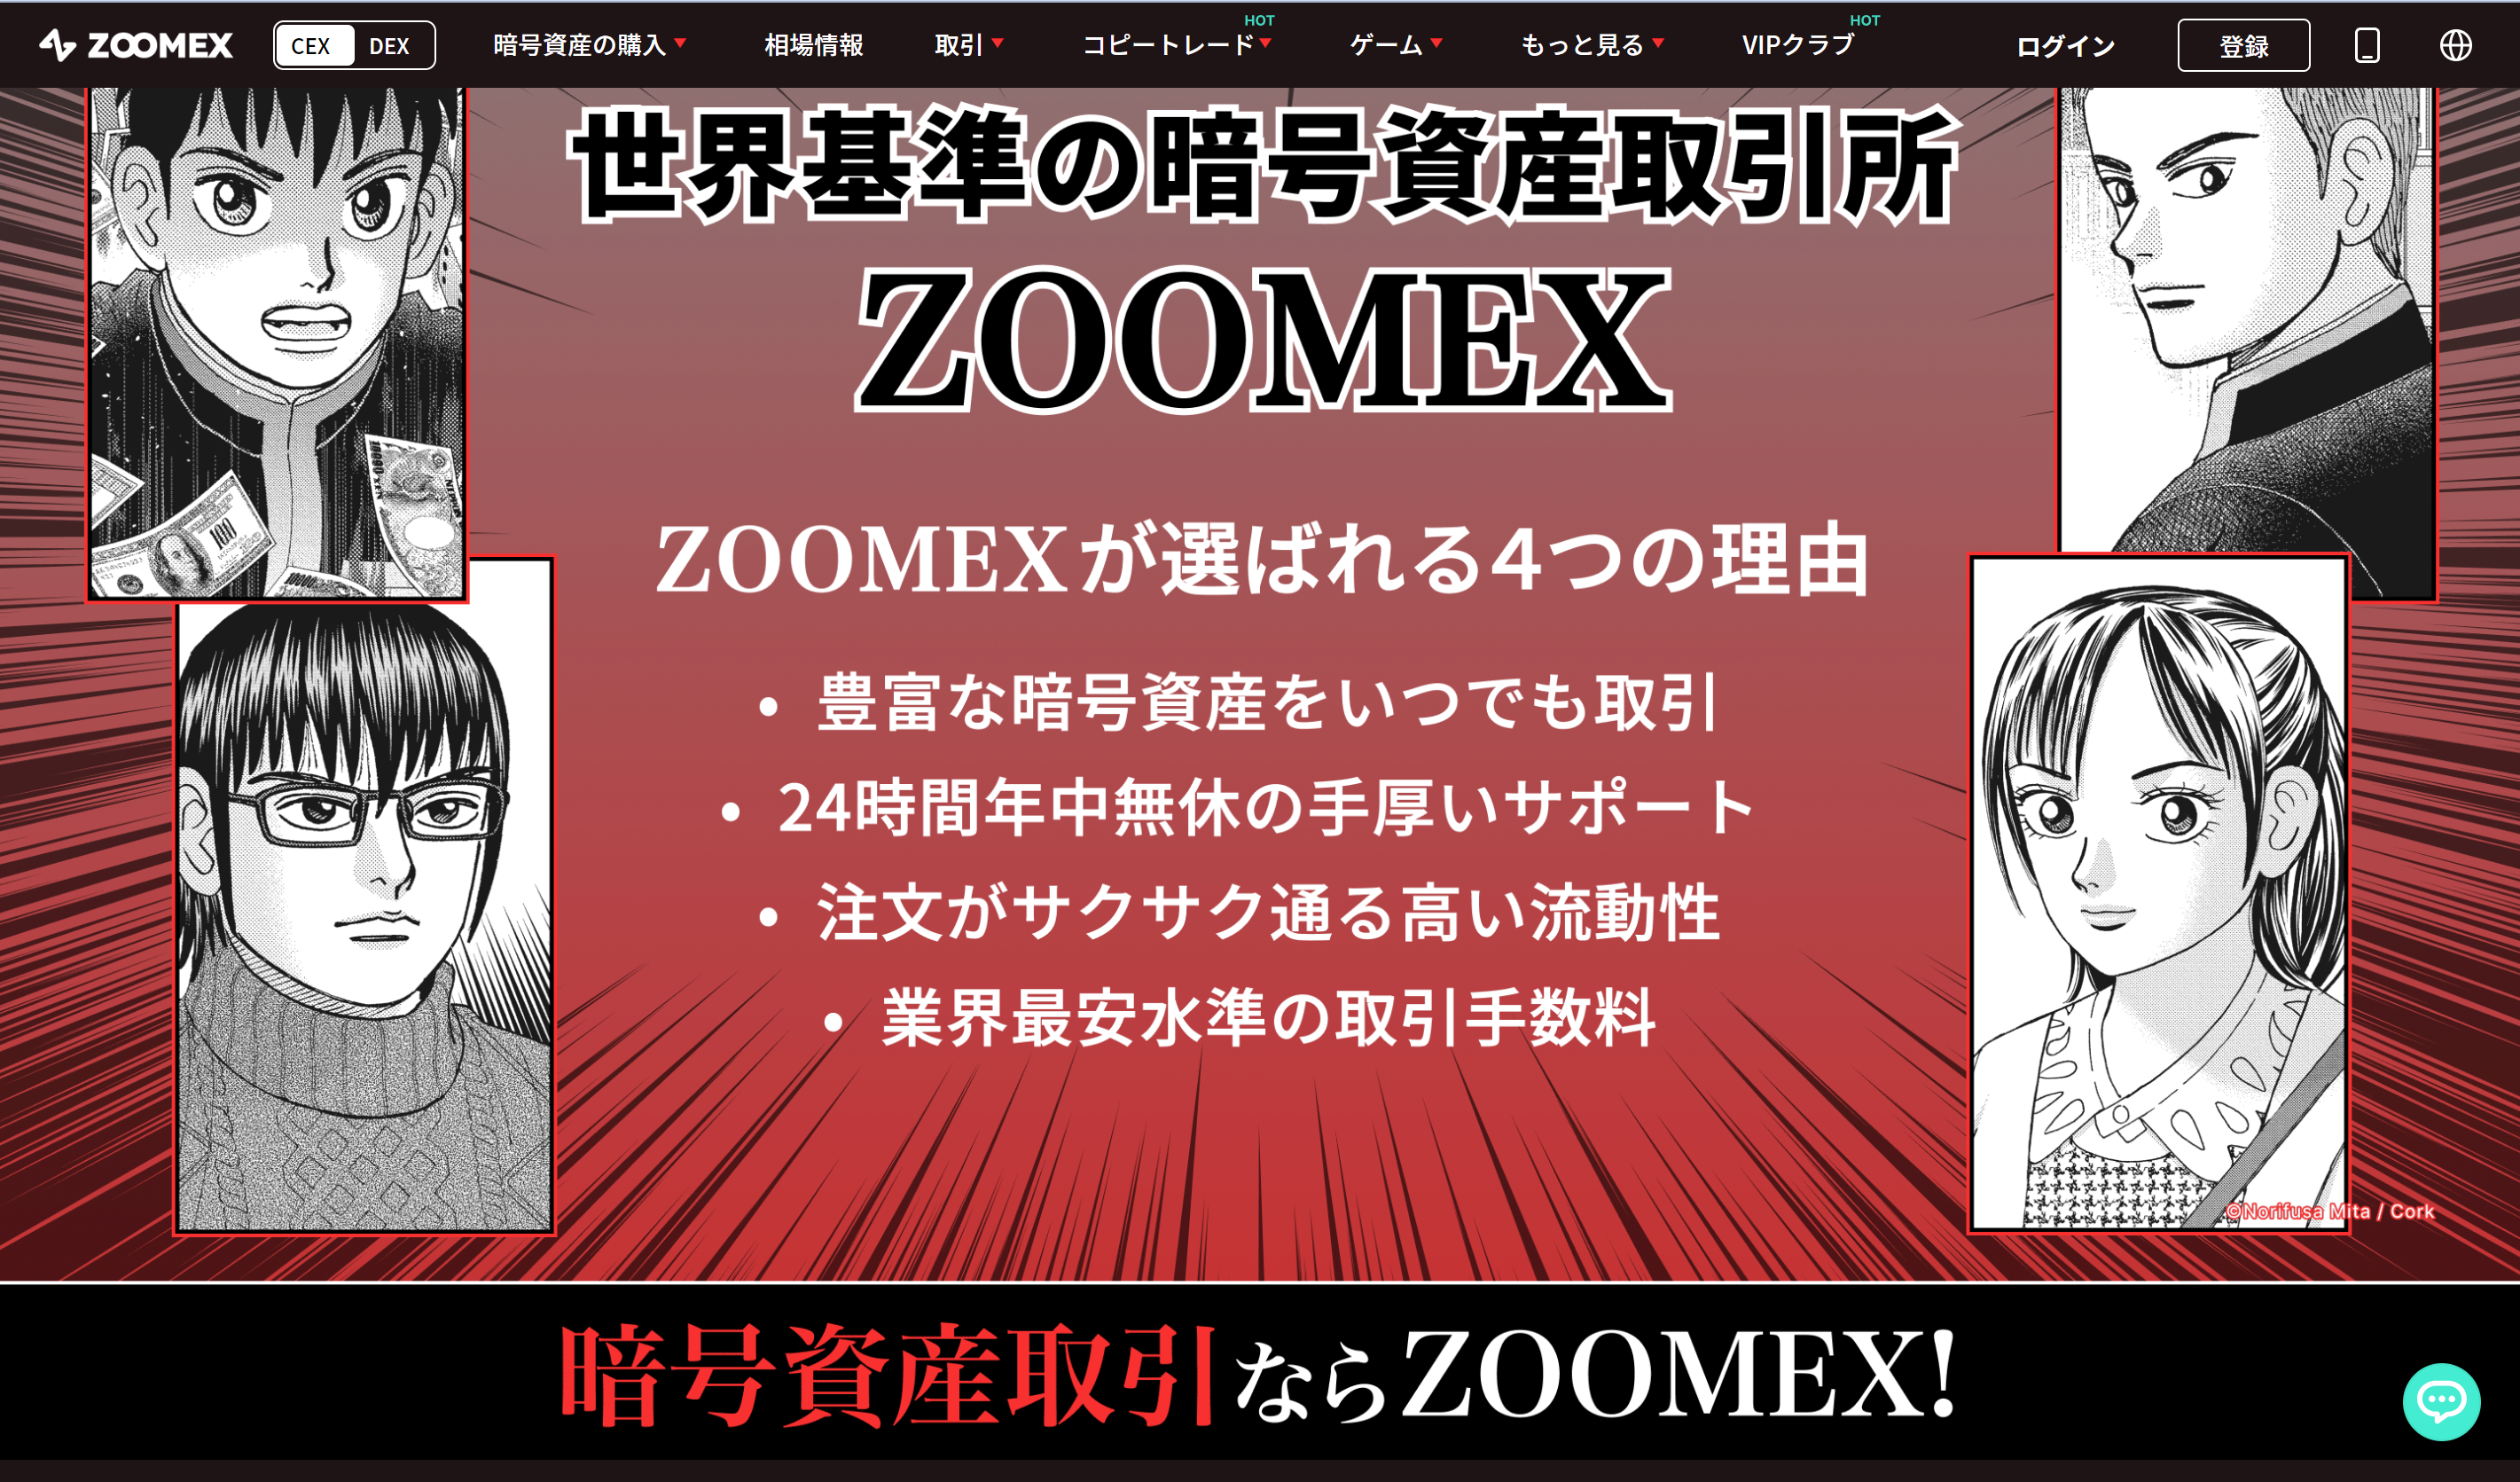 Zoomexの概要